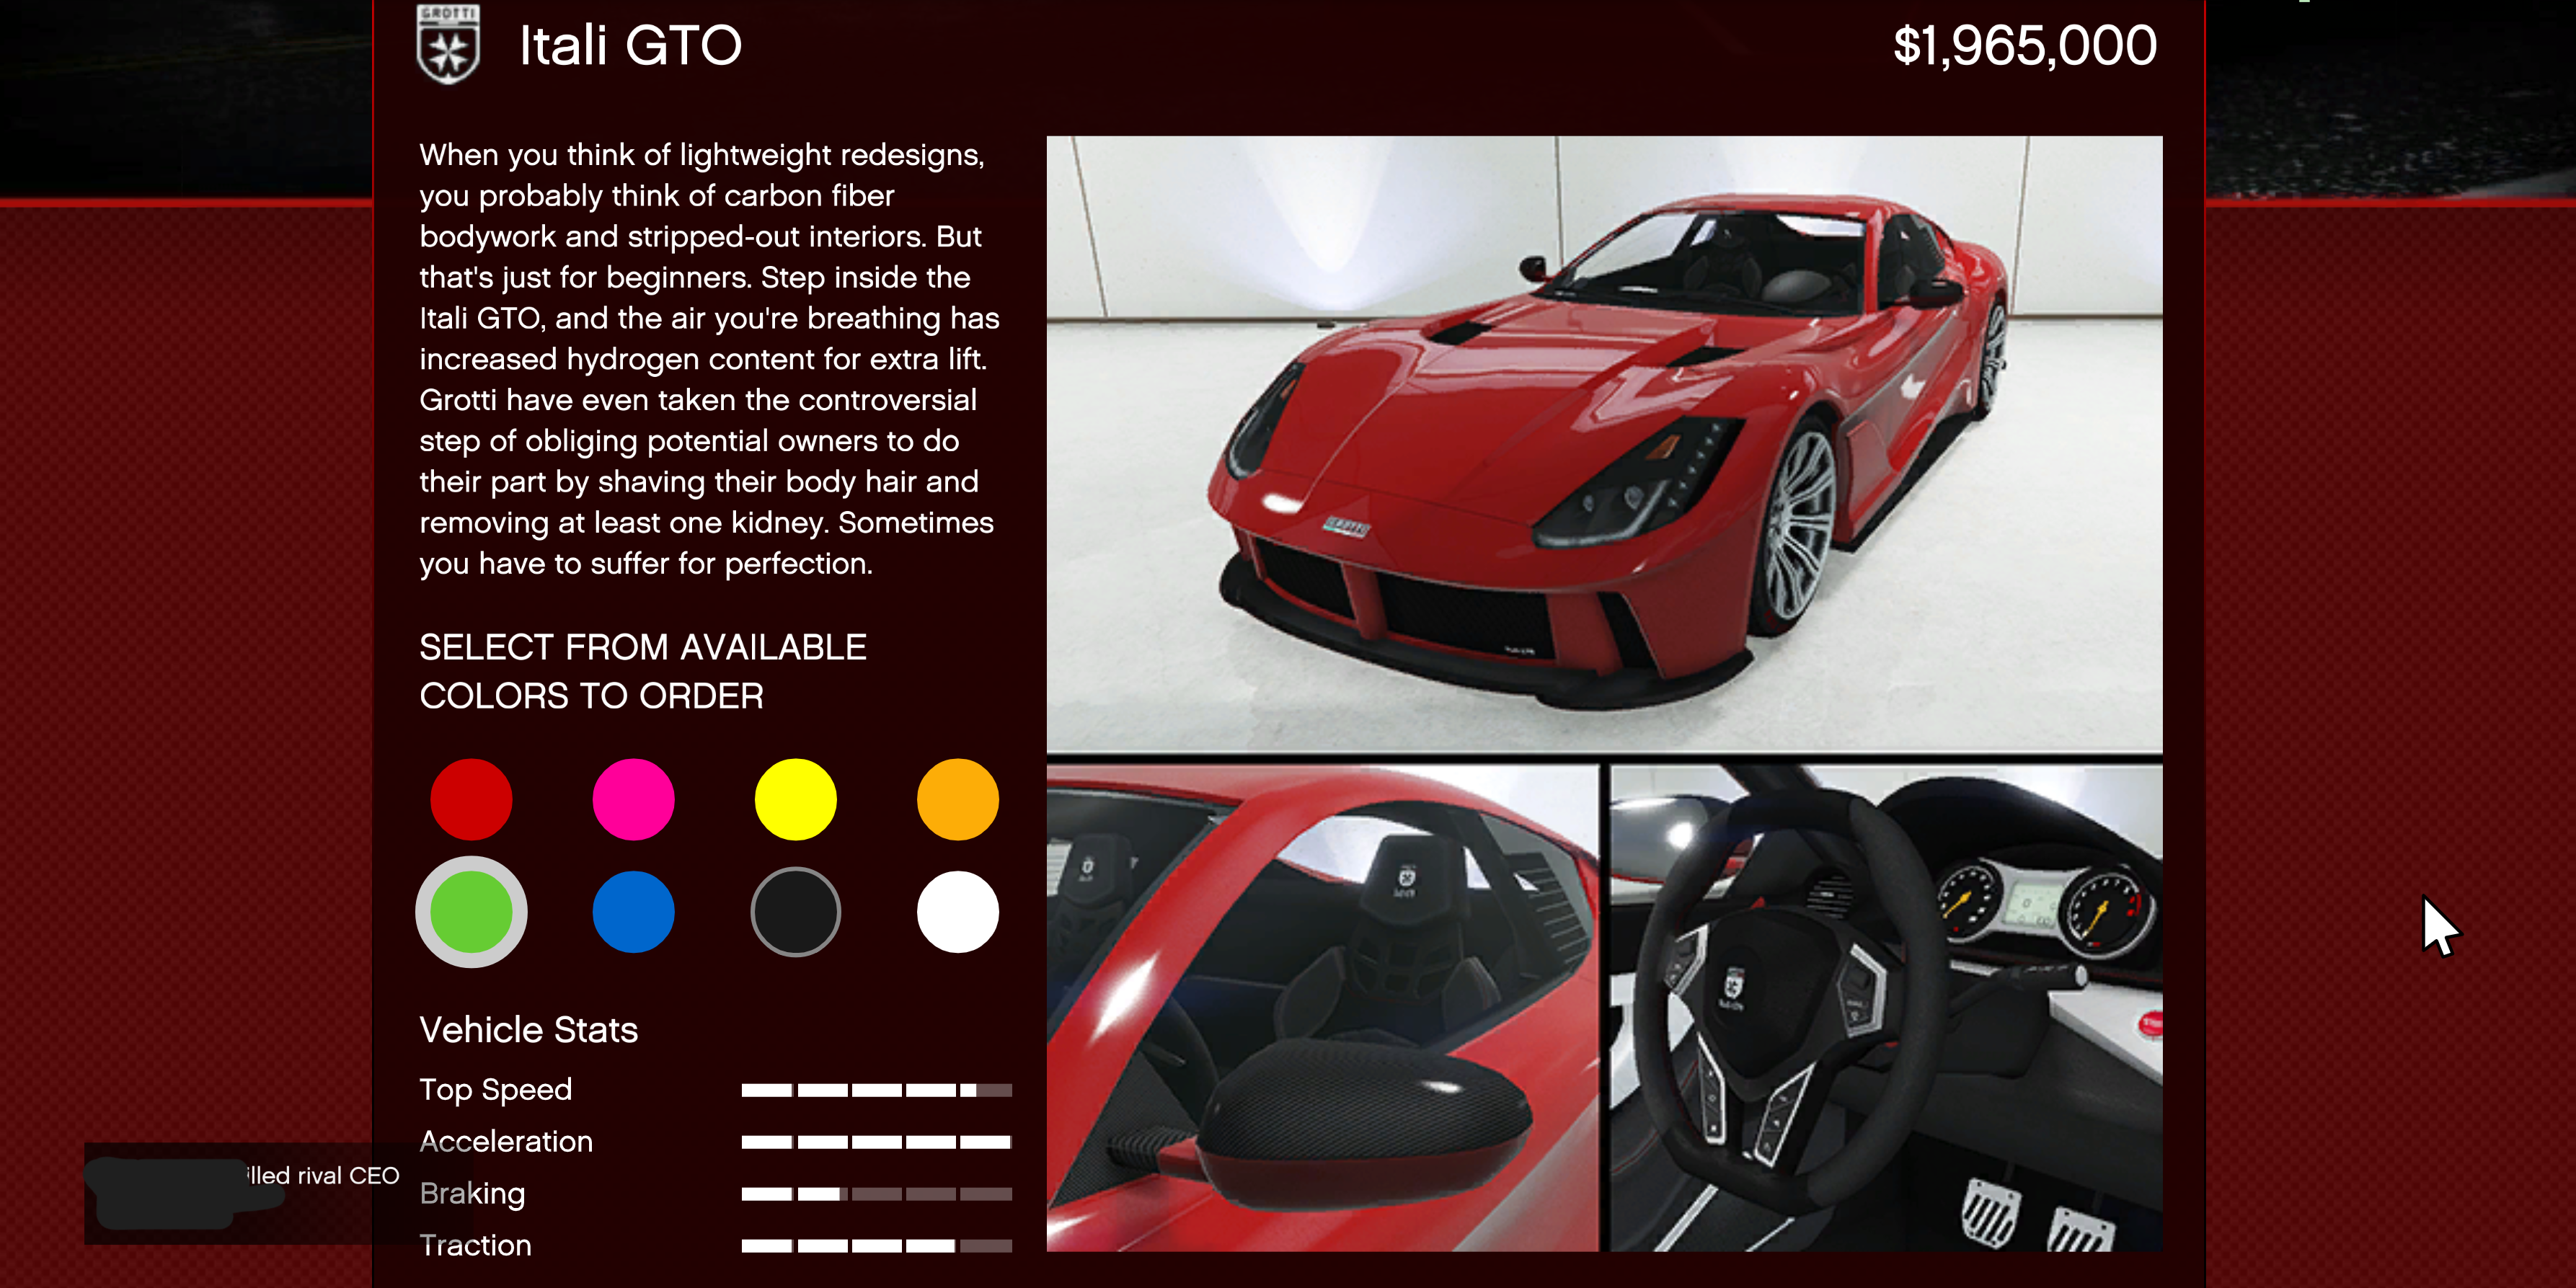 Une Grotti Itali GTO rouge à vendre dans GTA Online